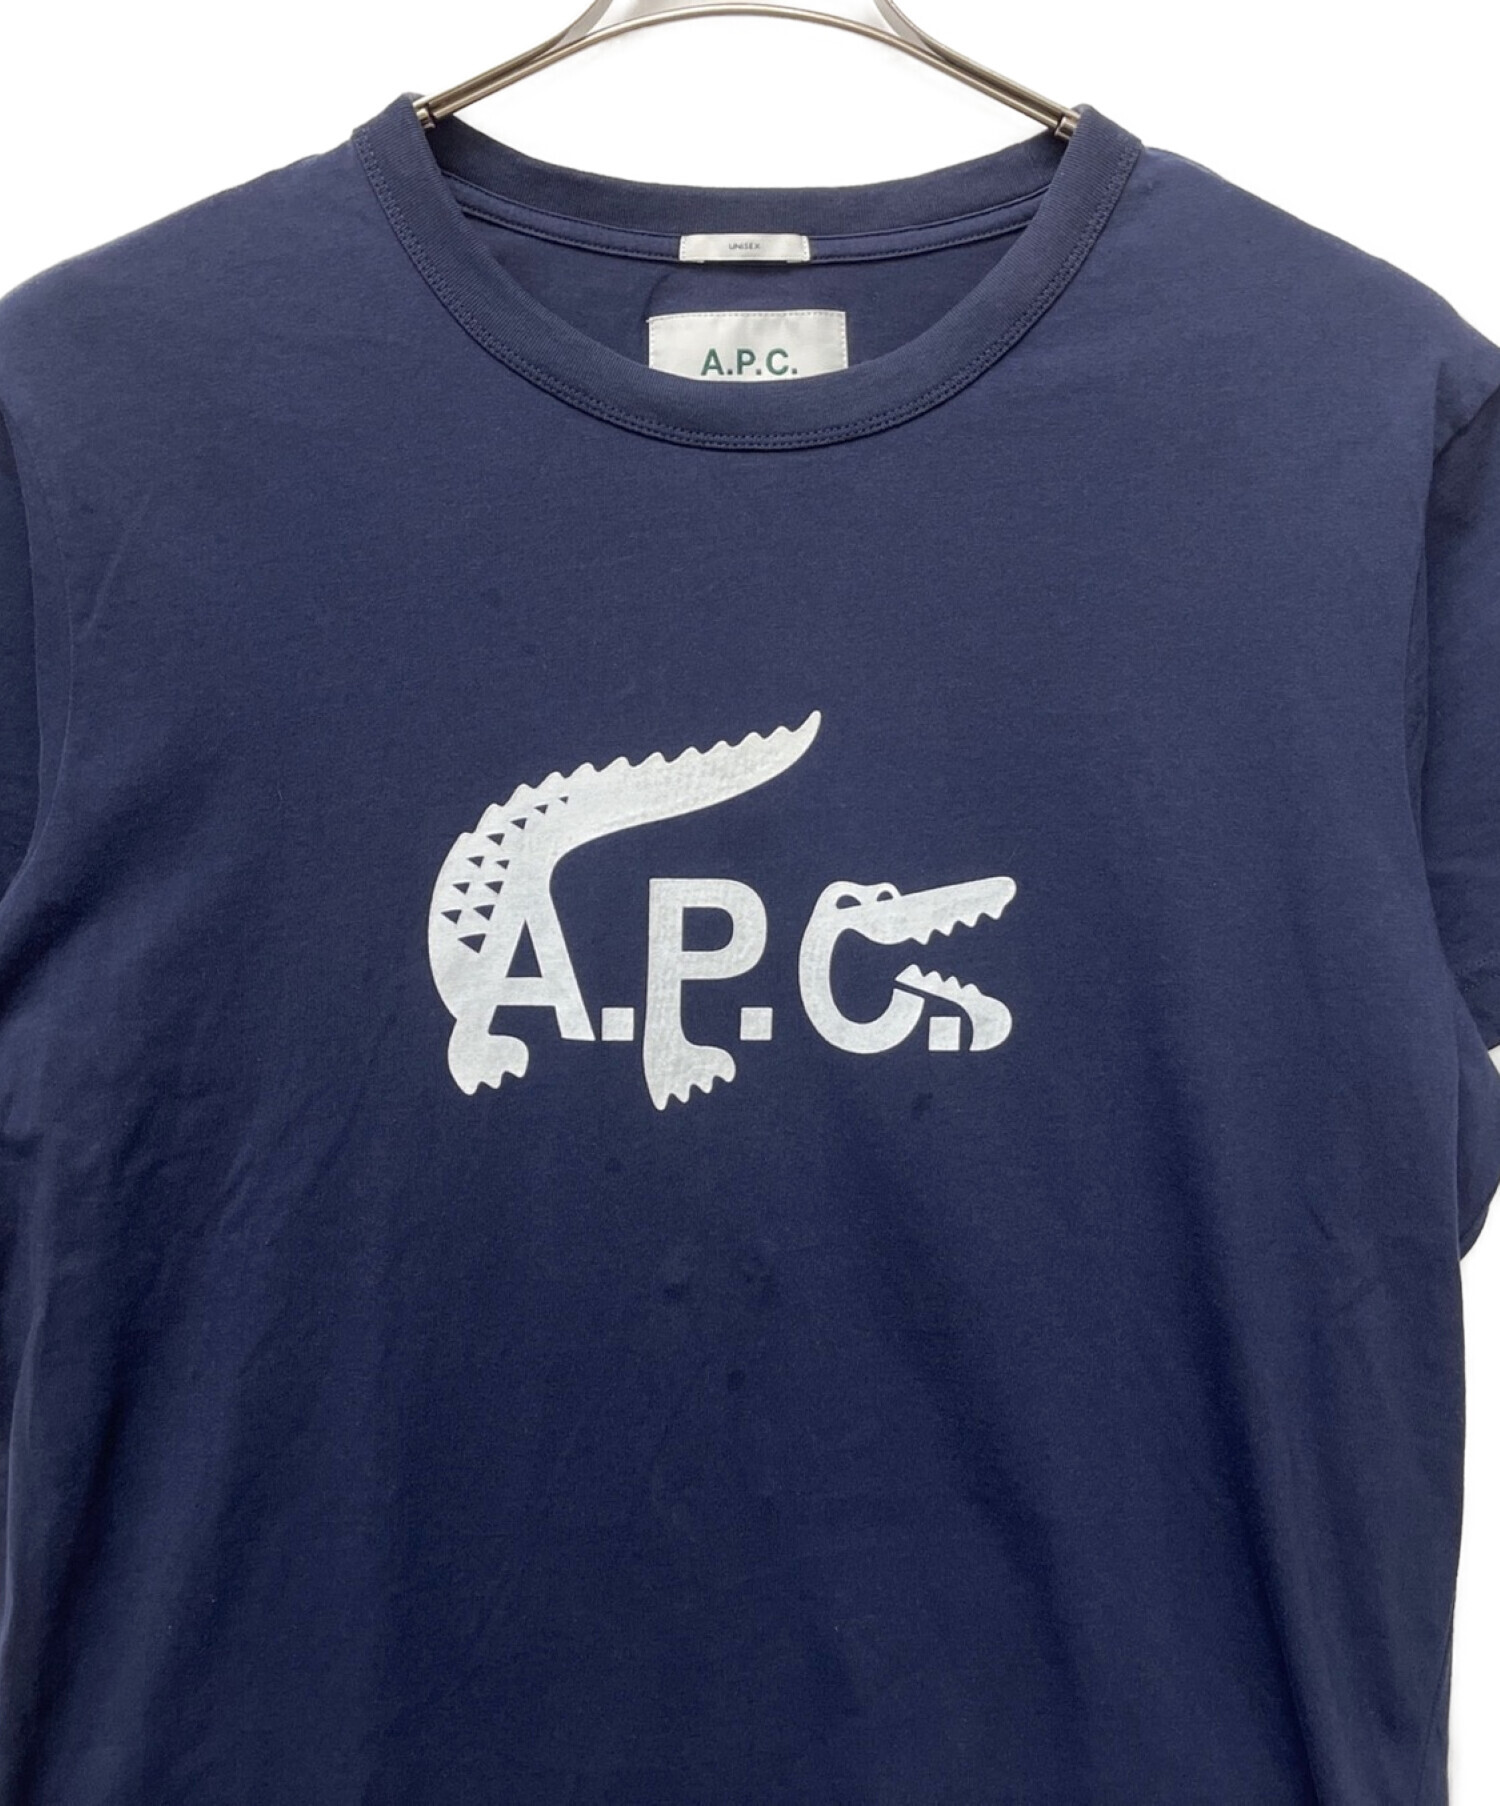 A.P.C×LACOSTE (アーペーセー × ラコステ) プリントTシャツ ネイビー サイズ:XL